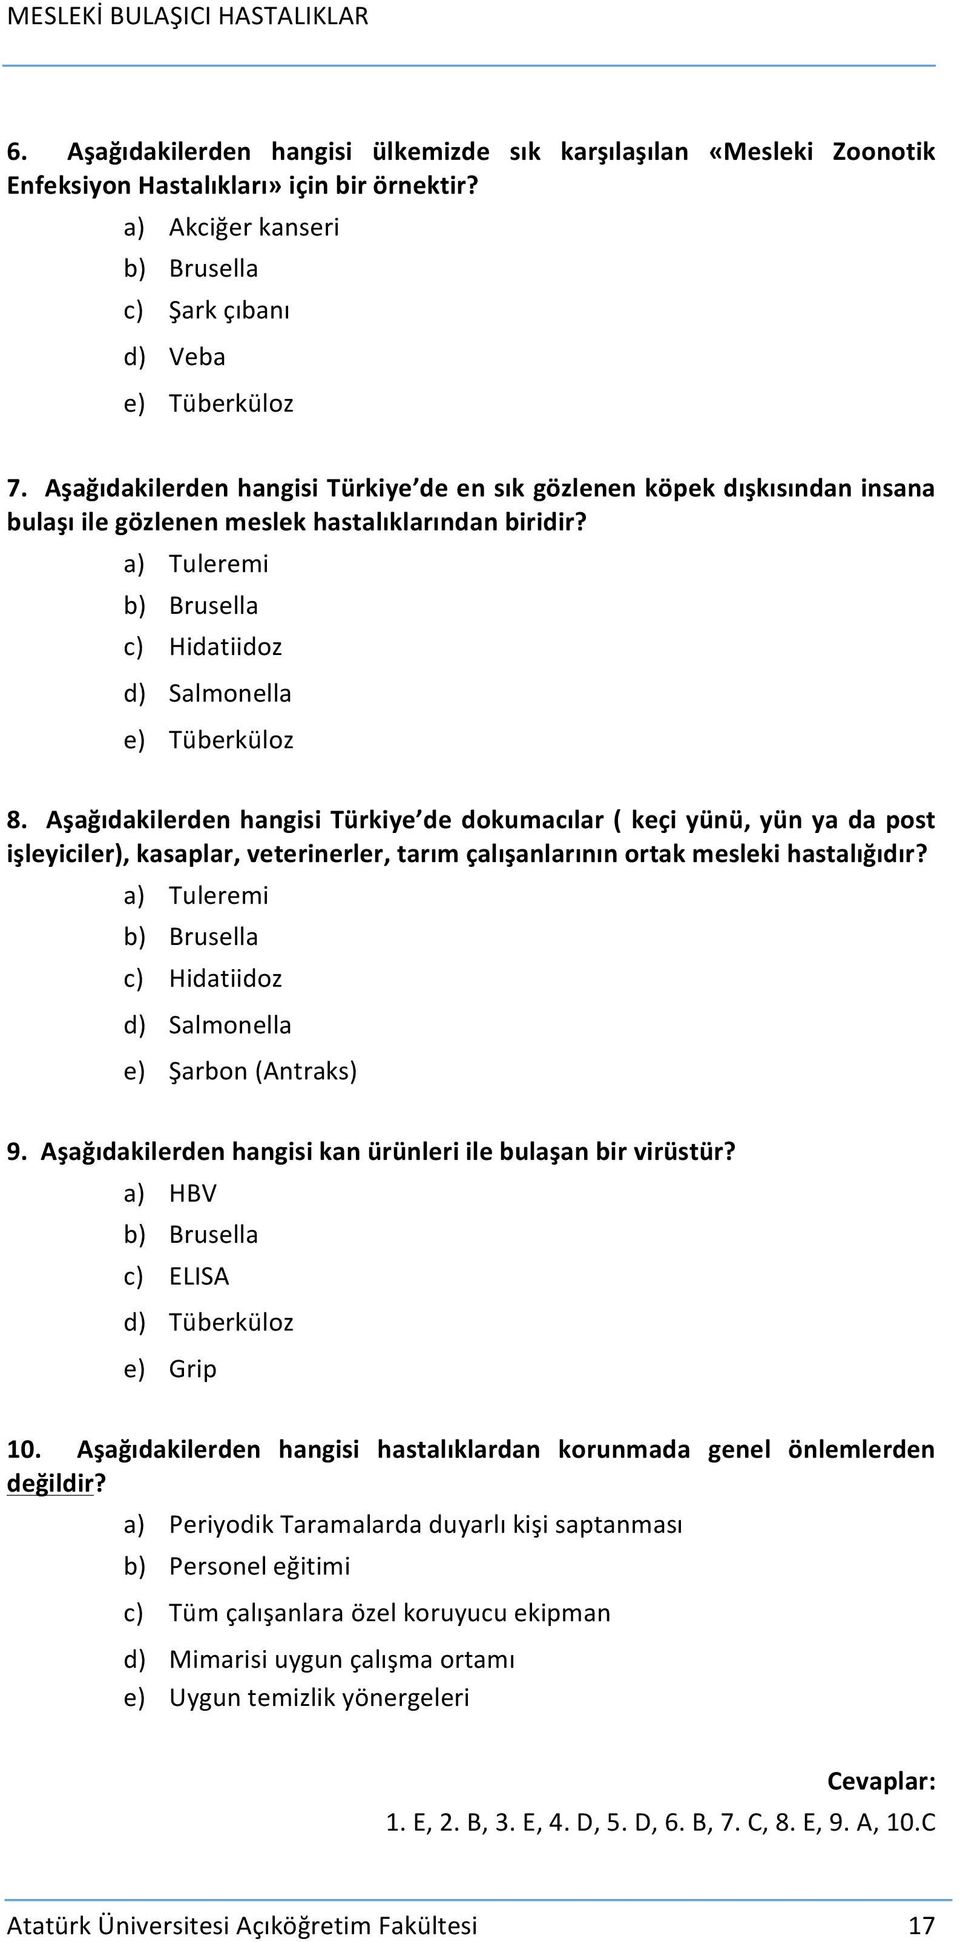 Aşağıdakilerden hangisi Türkiye de dokumacılar ( keçi yünü, yün ya da post işleyiciler), kasaplar, veterinerler, tarım çalışanlarının ortak mesleki hastalığıdır?